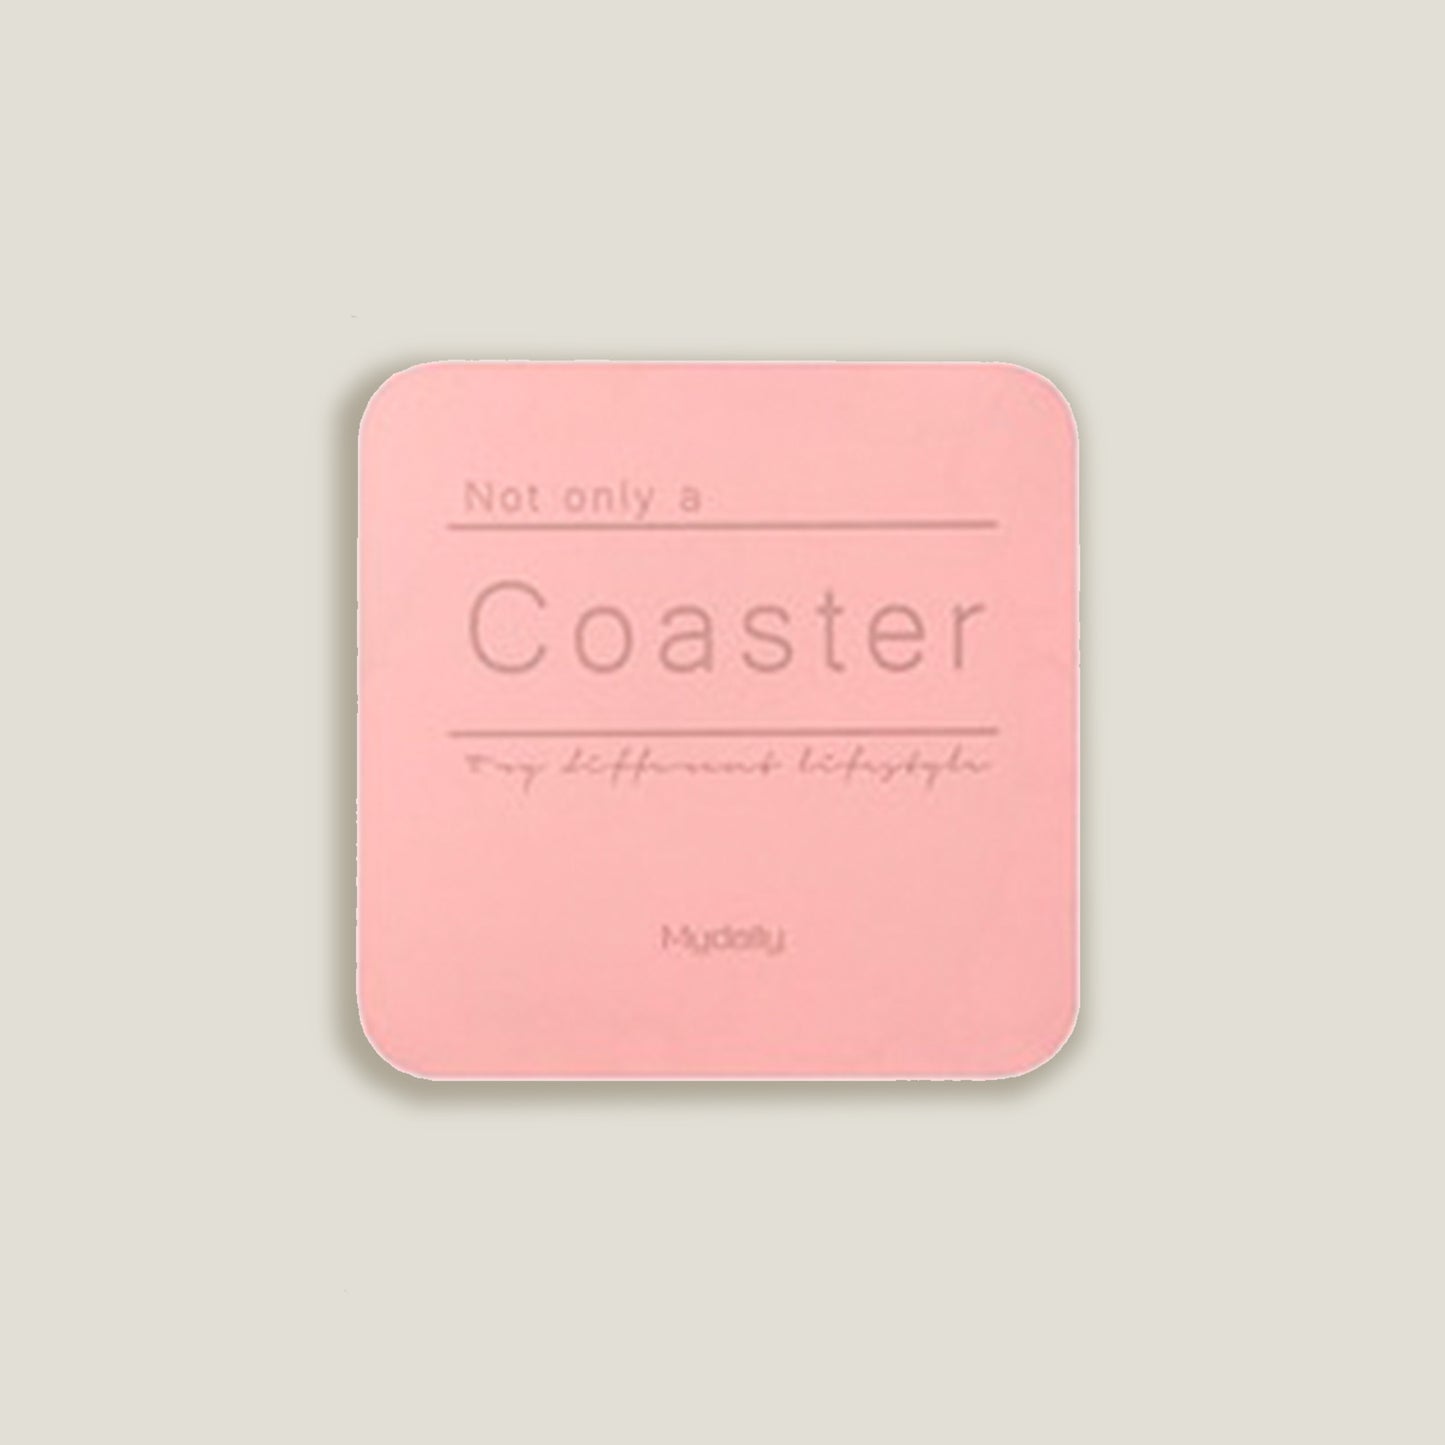 Pink Metal Colors Coasters